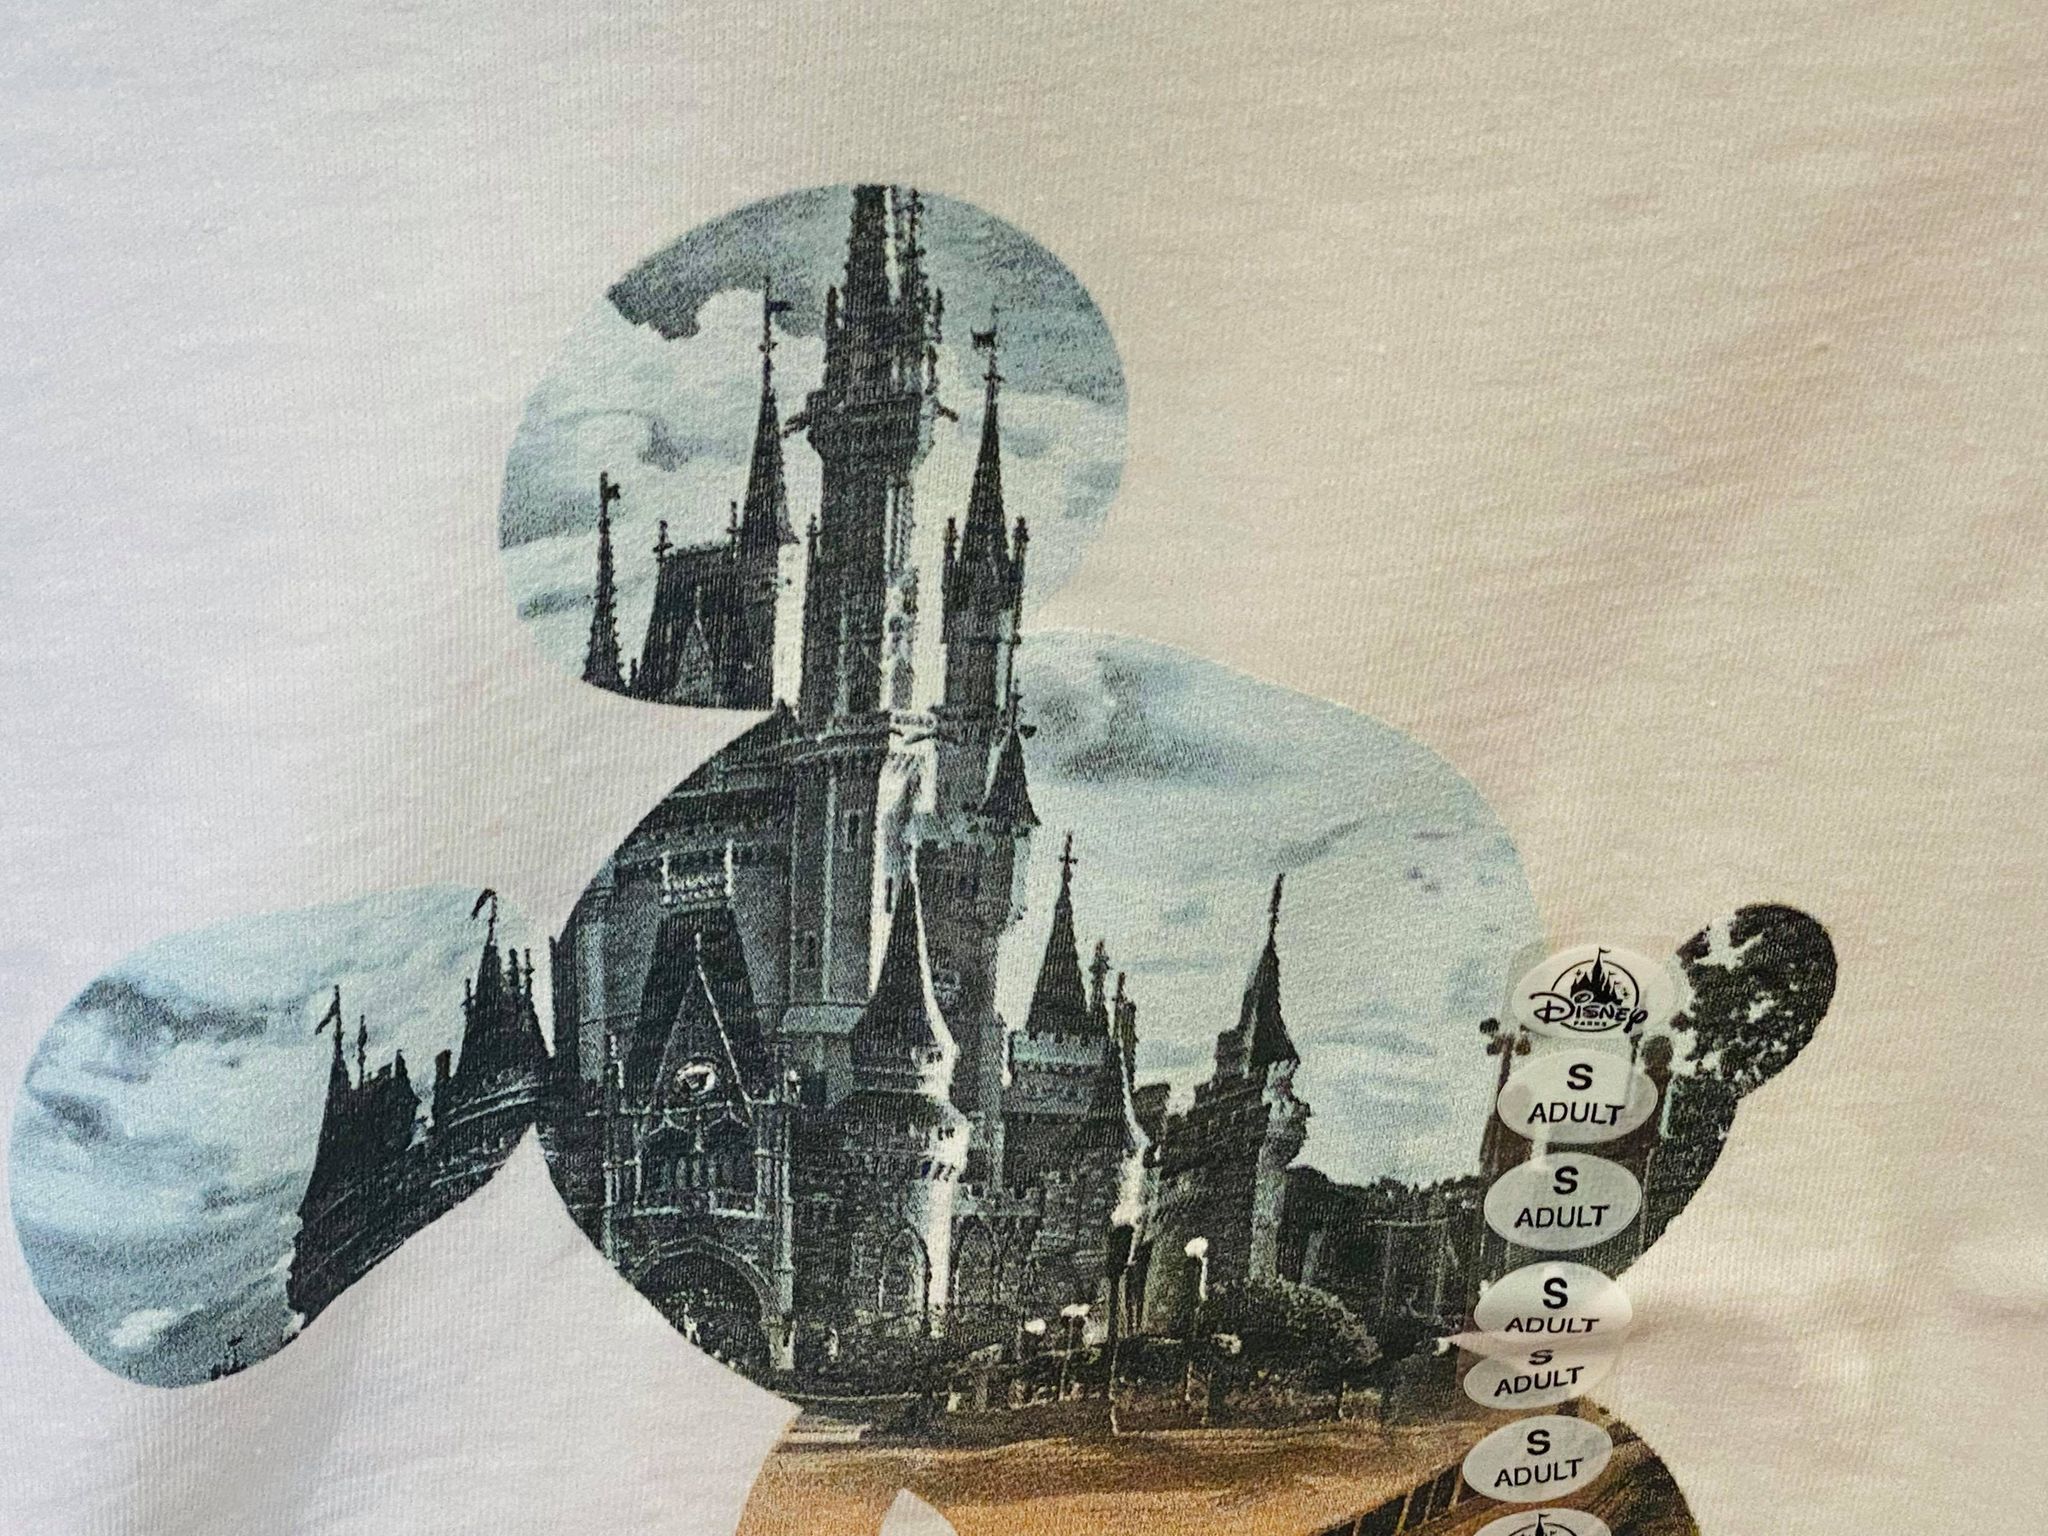 New Mickey Disney World Shirt Debuts at Star Traders - MickeyBlog.com